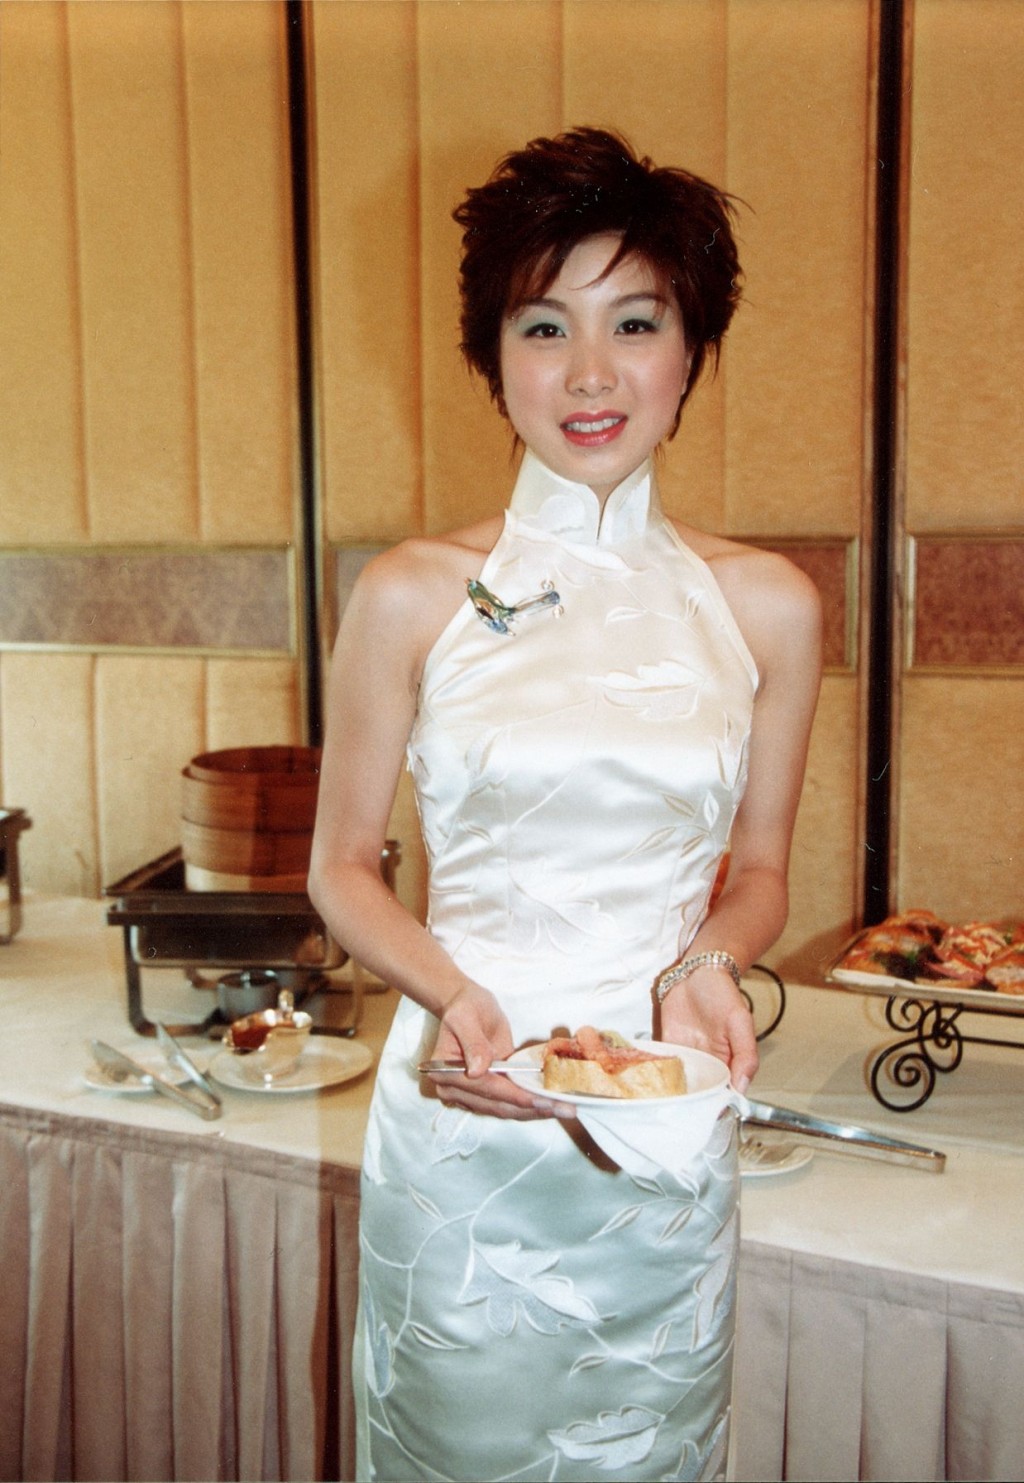 胡家惠于2002年参加香港小姐竞选。